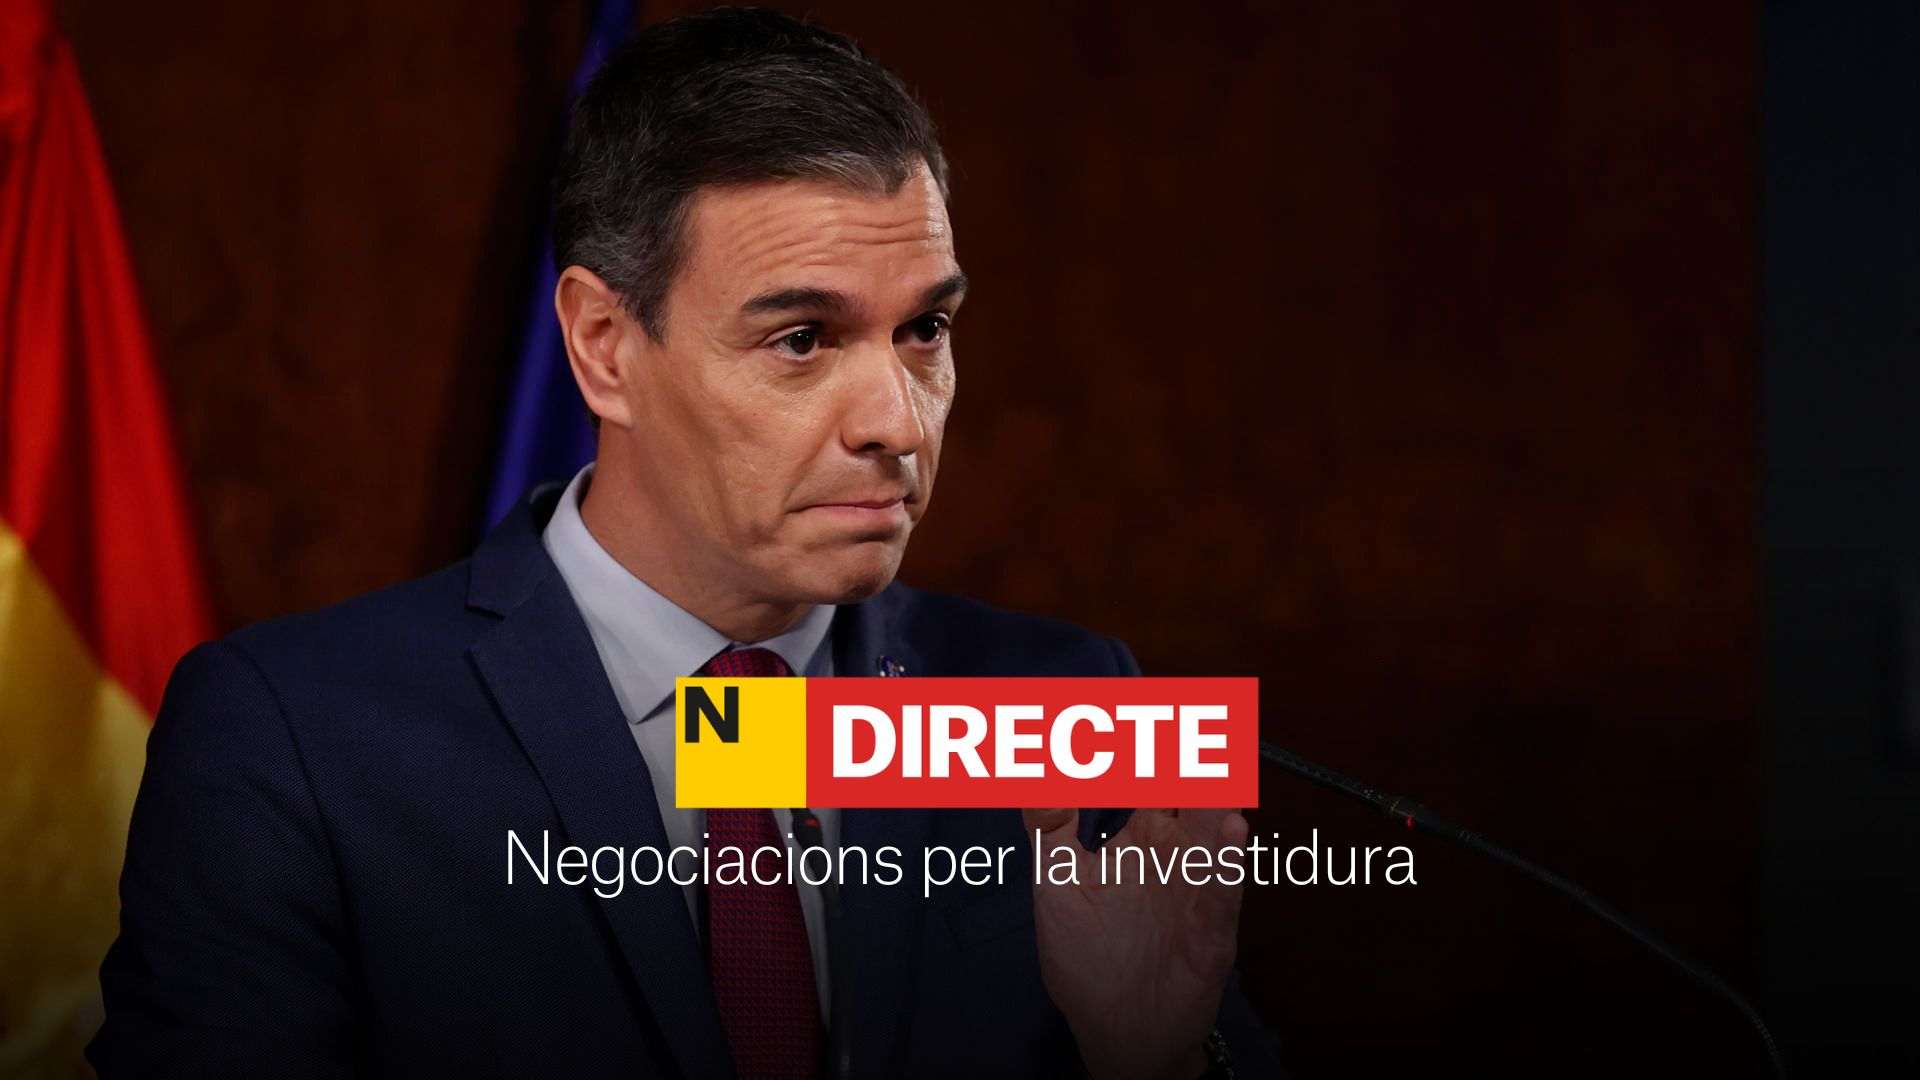 Negociacions per a la investidura de Pedro Sánchez, DIRECTE